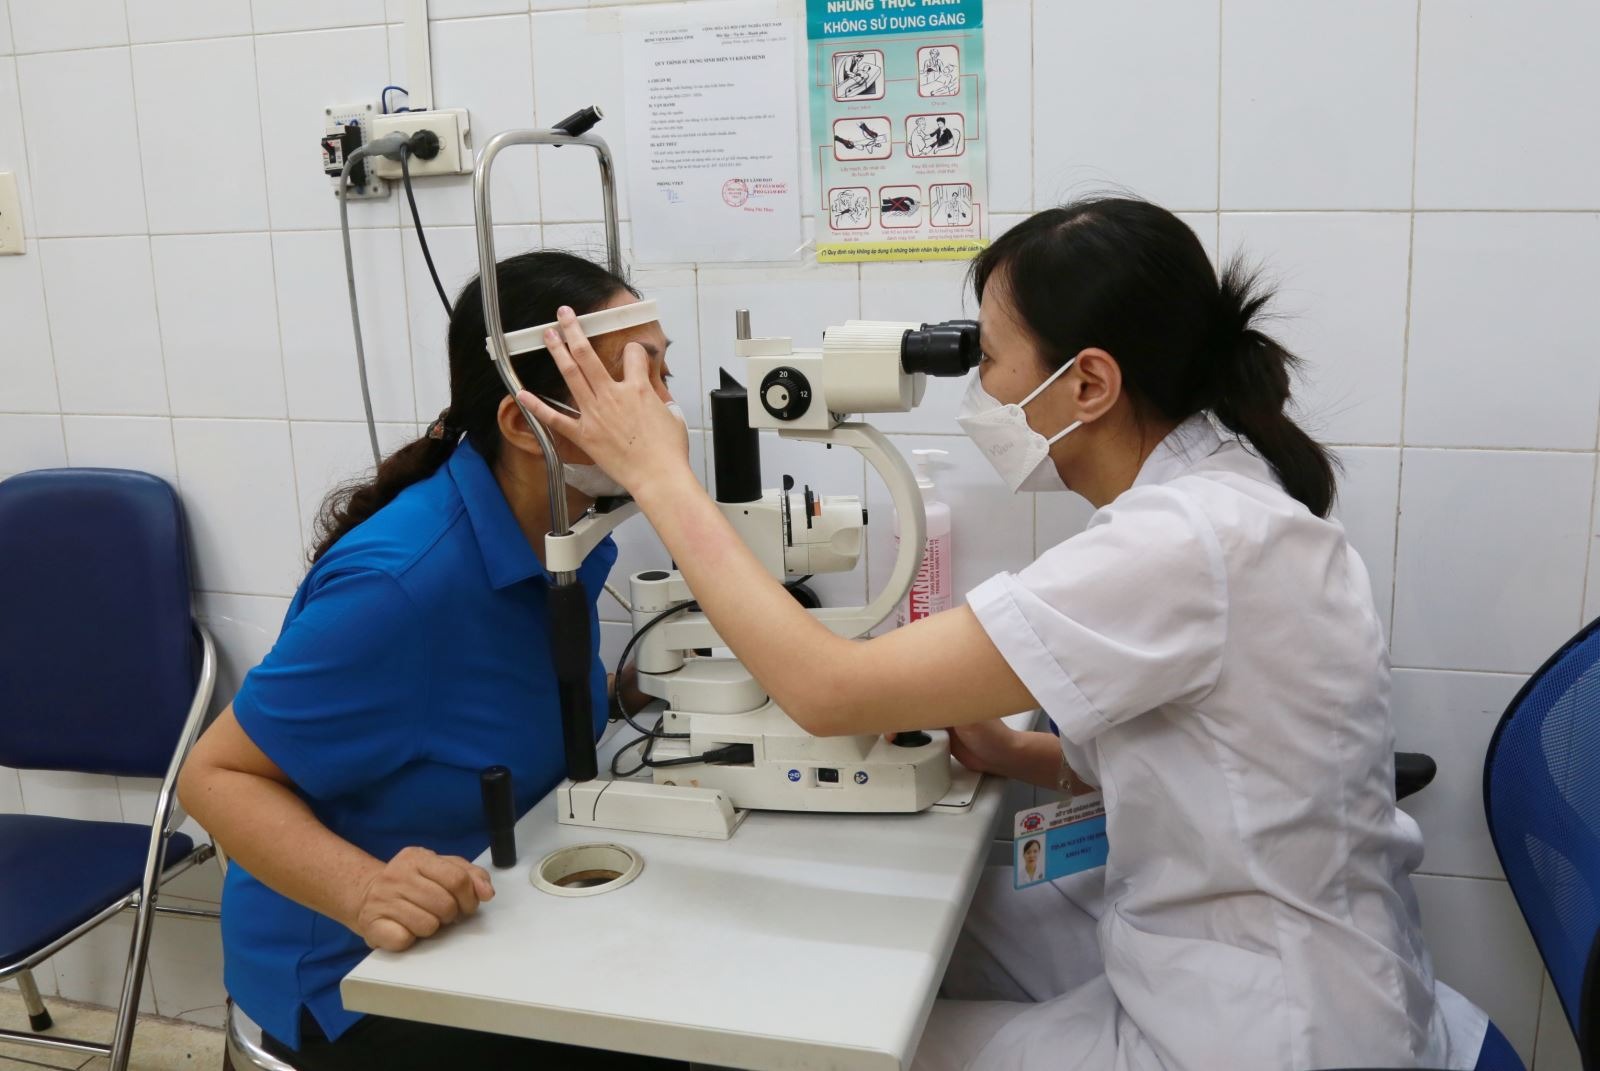 Dịch đau mắt đỏ lan rộng, Bộ Y tế khuyến cáo 5 biện pháp phòng chống - Ảnh 2.